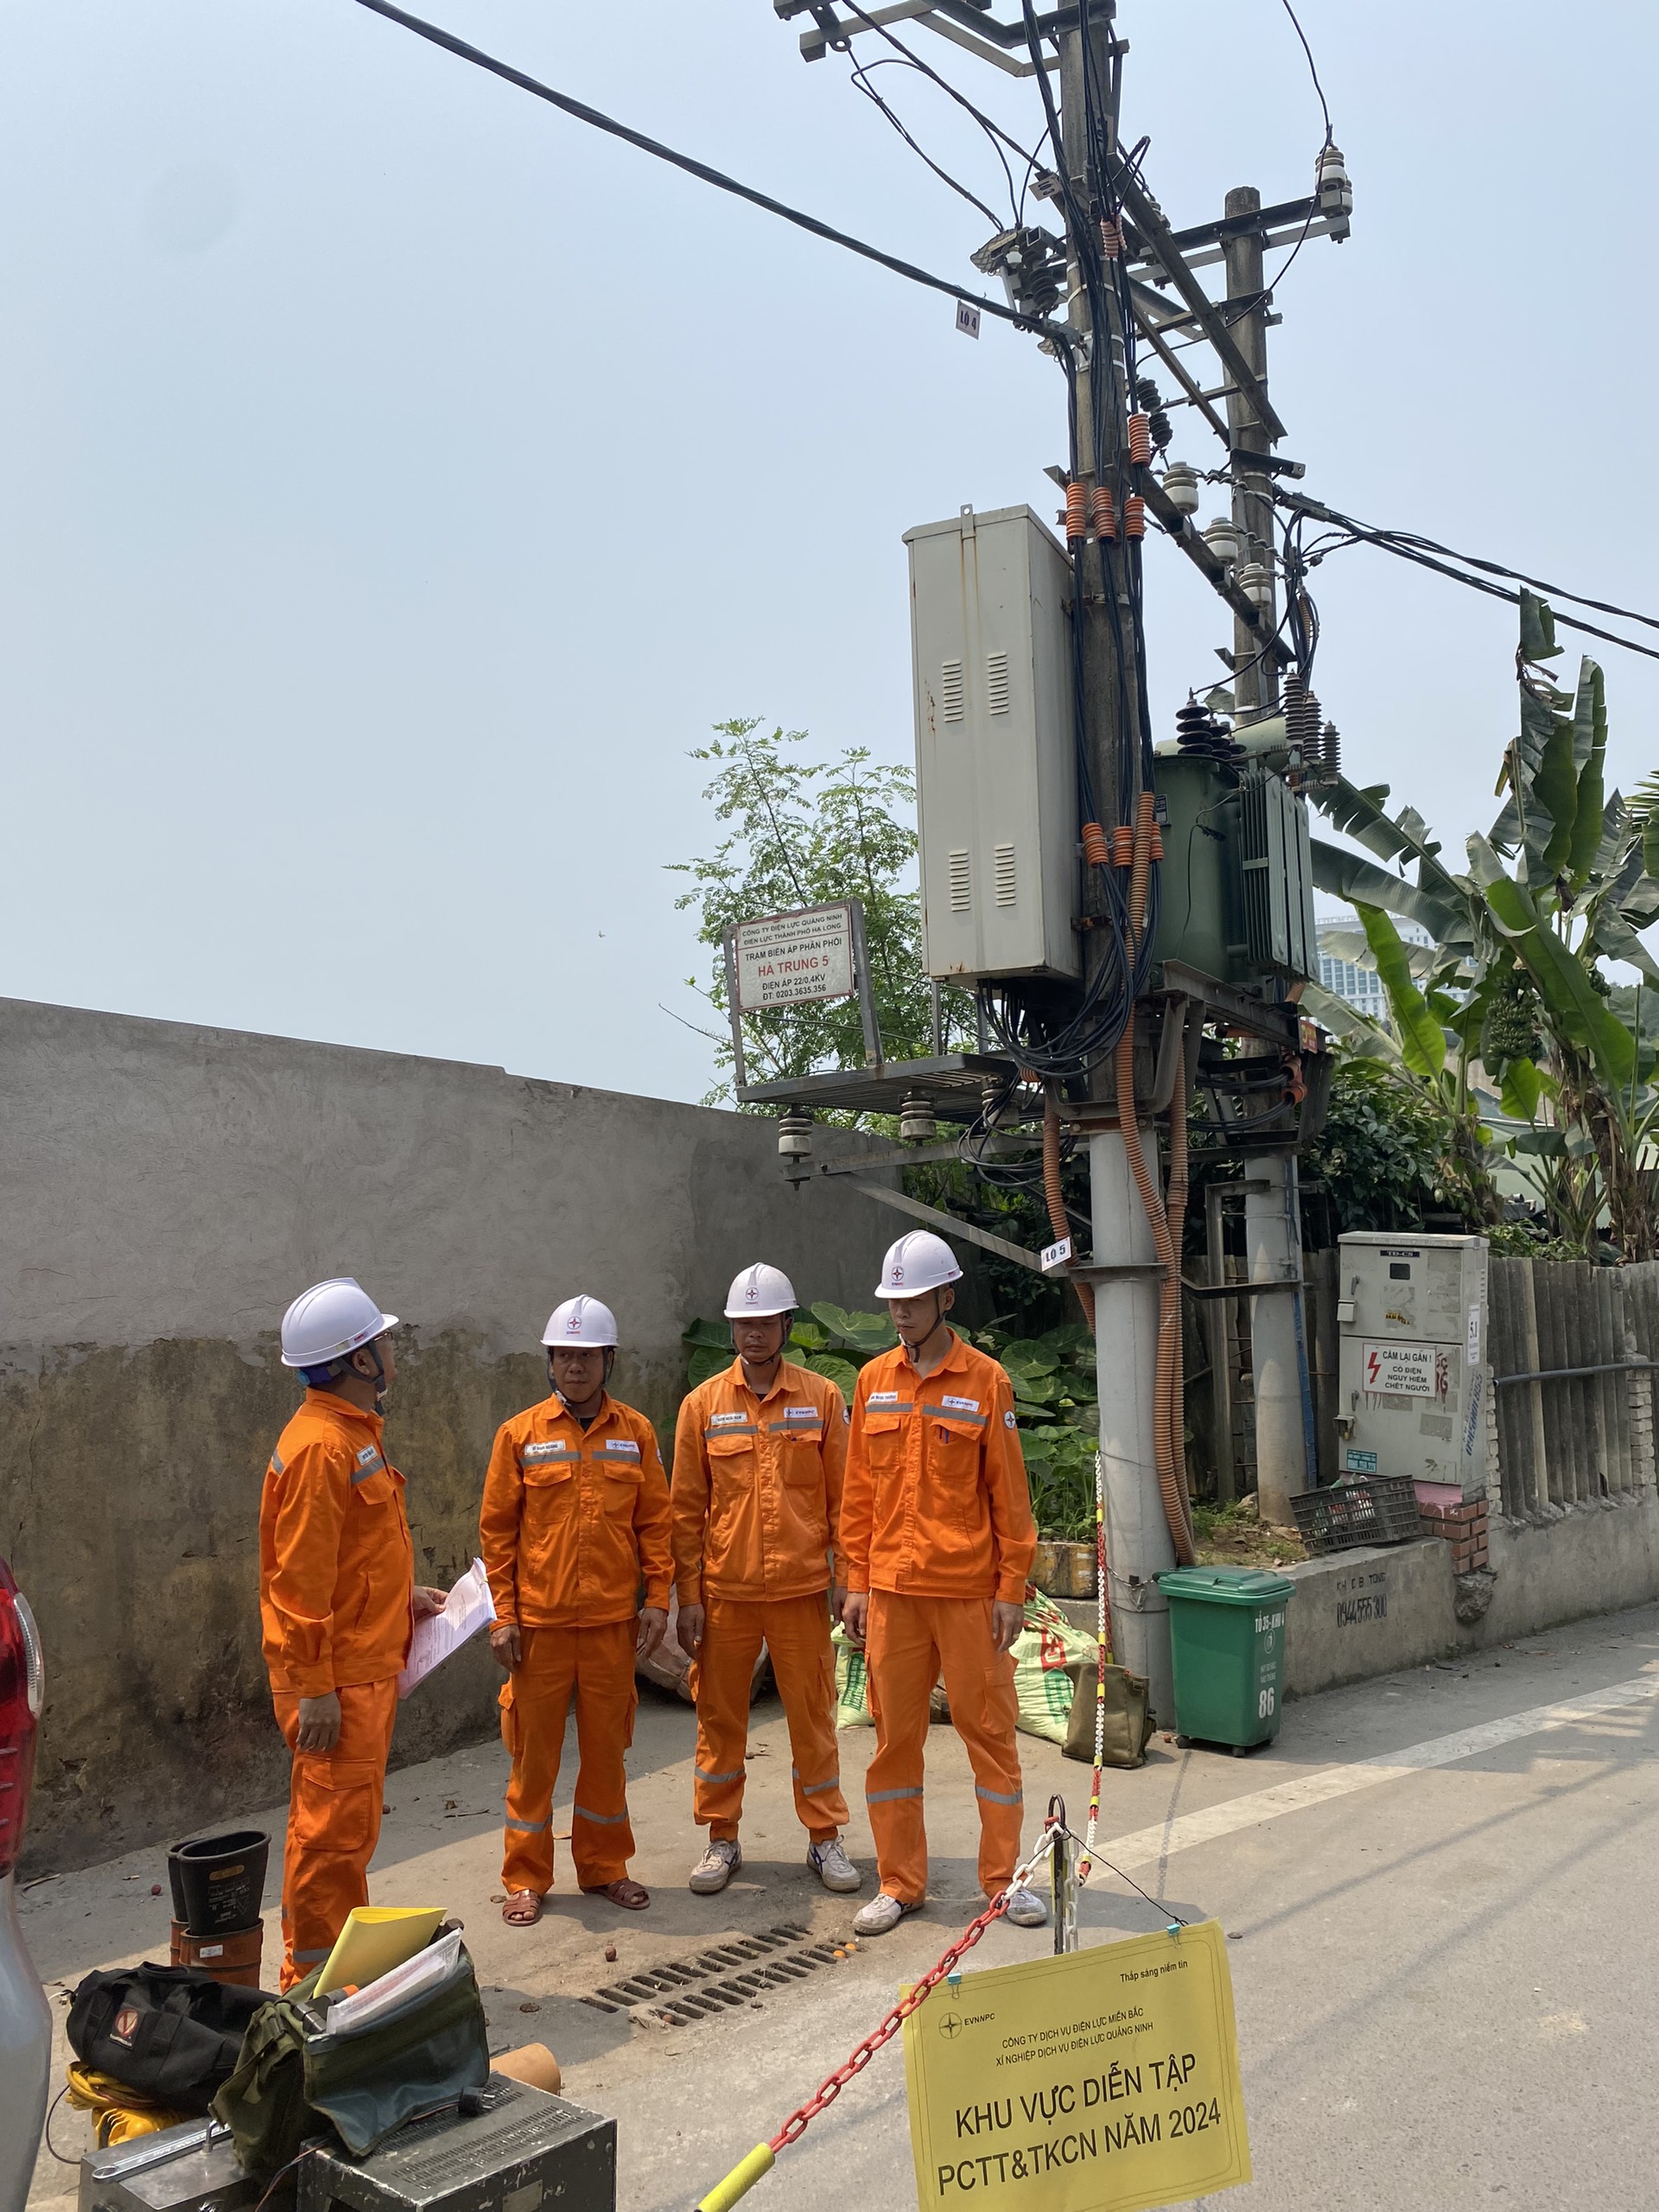 Xí nghiệp Dịch vụ Điện lực Quảng Ninh phối hợp với Công ty Điện lực Quảng Ninh diễn tập công tác PCTT&TKCN - Xử lý sự cố - An toàn năm 2024